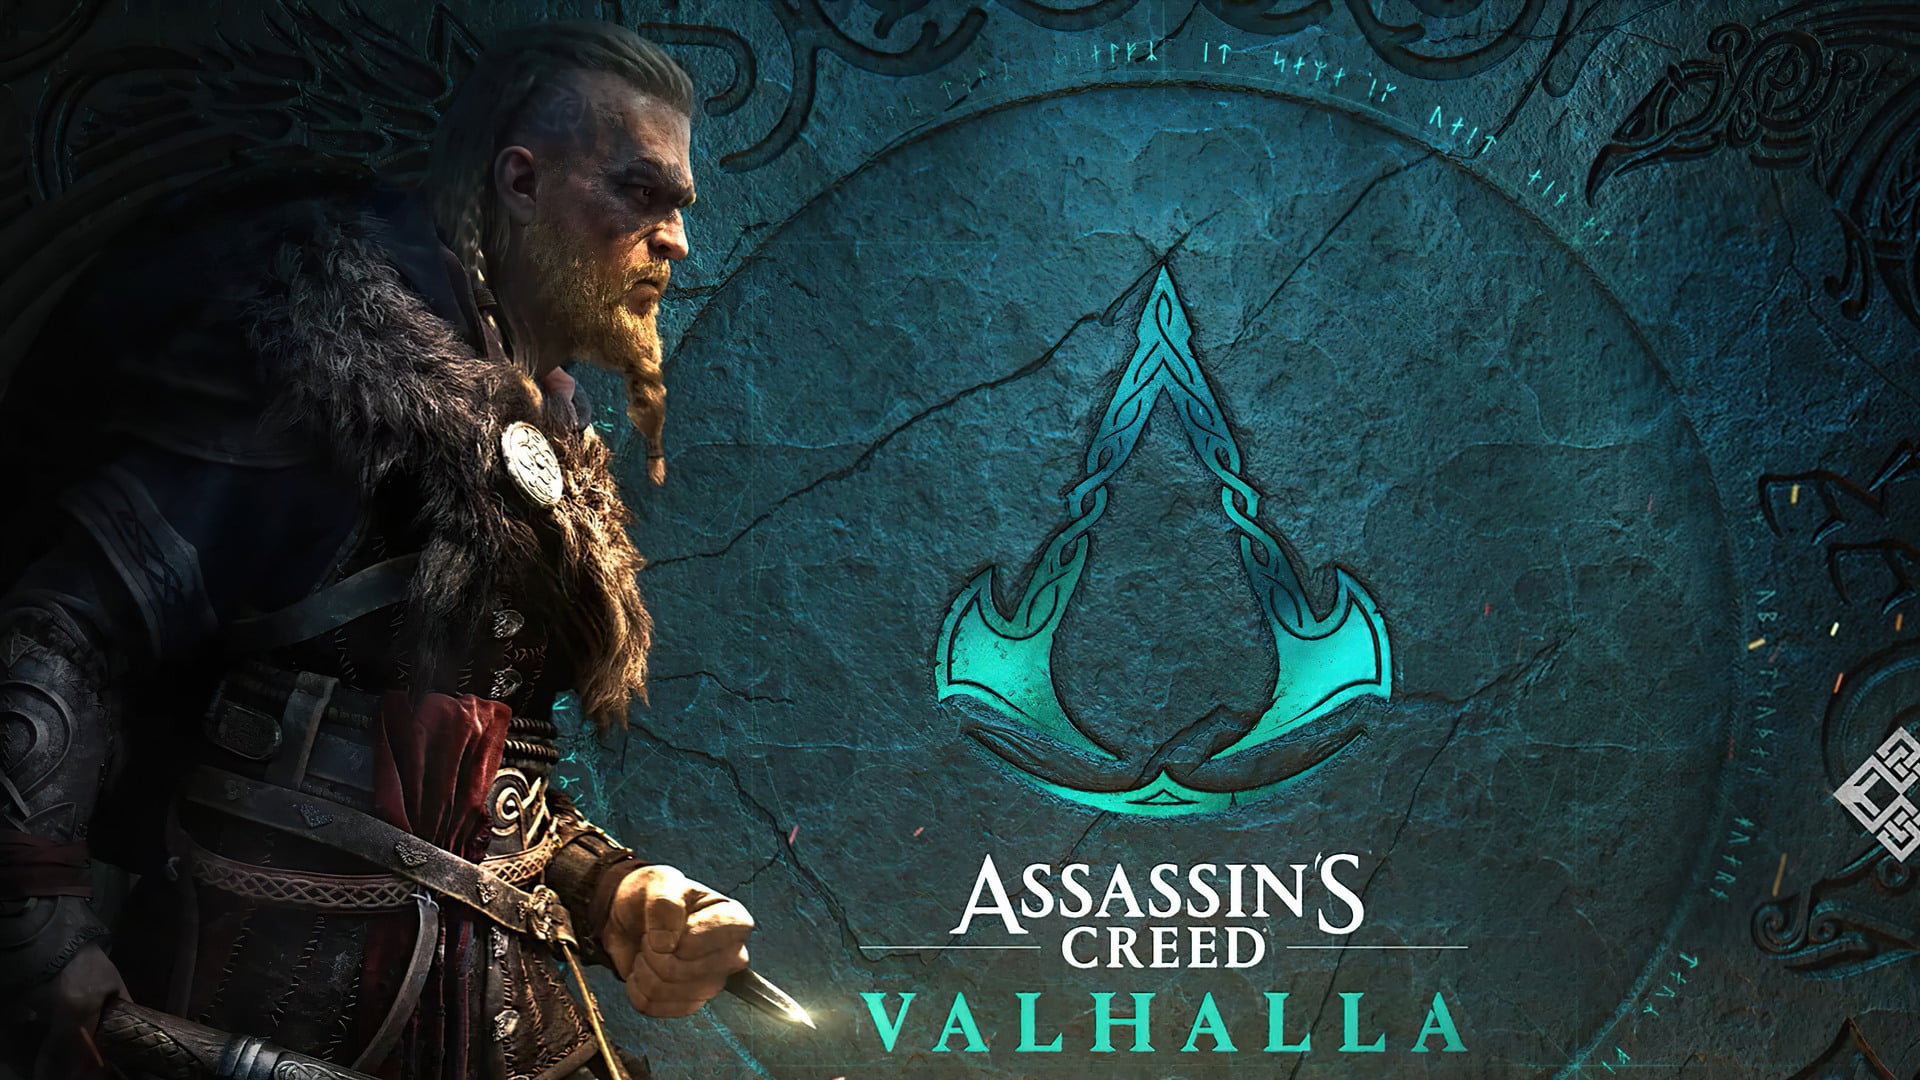 Assassin's creed valhalla tem novo vídeo de "gameplay" | b81c7524 assassins creed eivor valhalla | married games notícias | assassin's creed valhalla